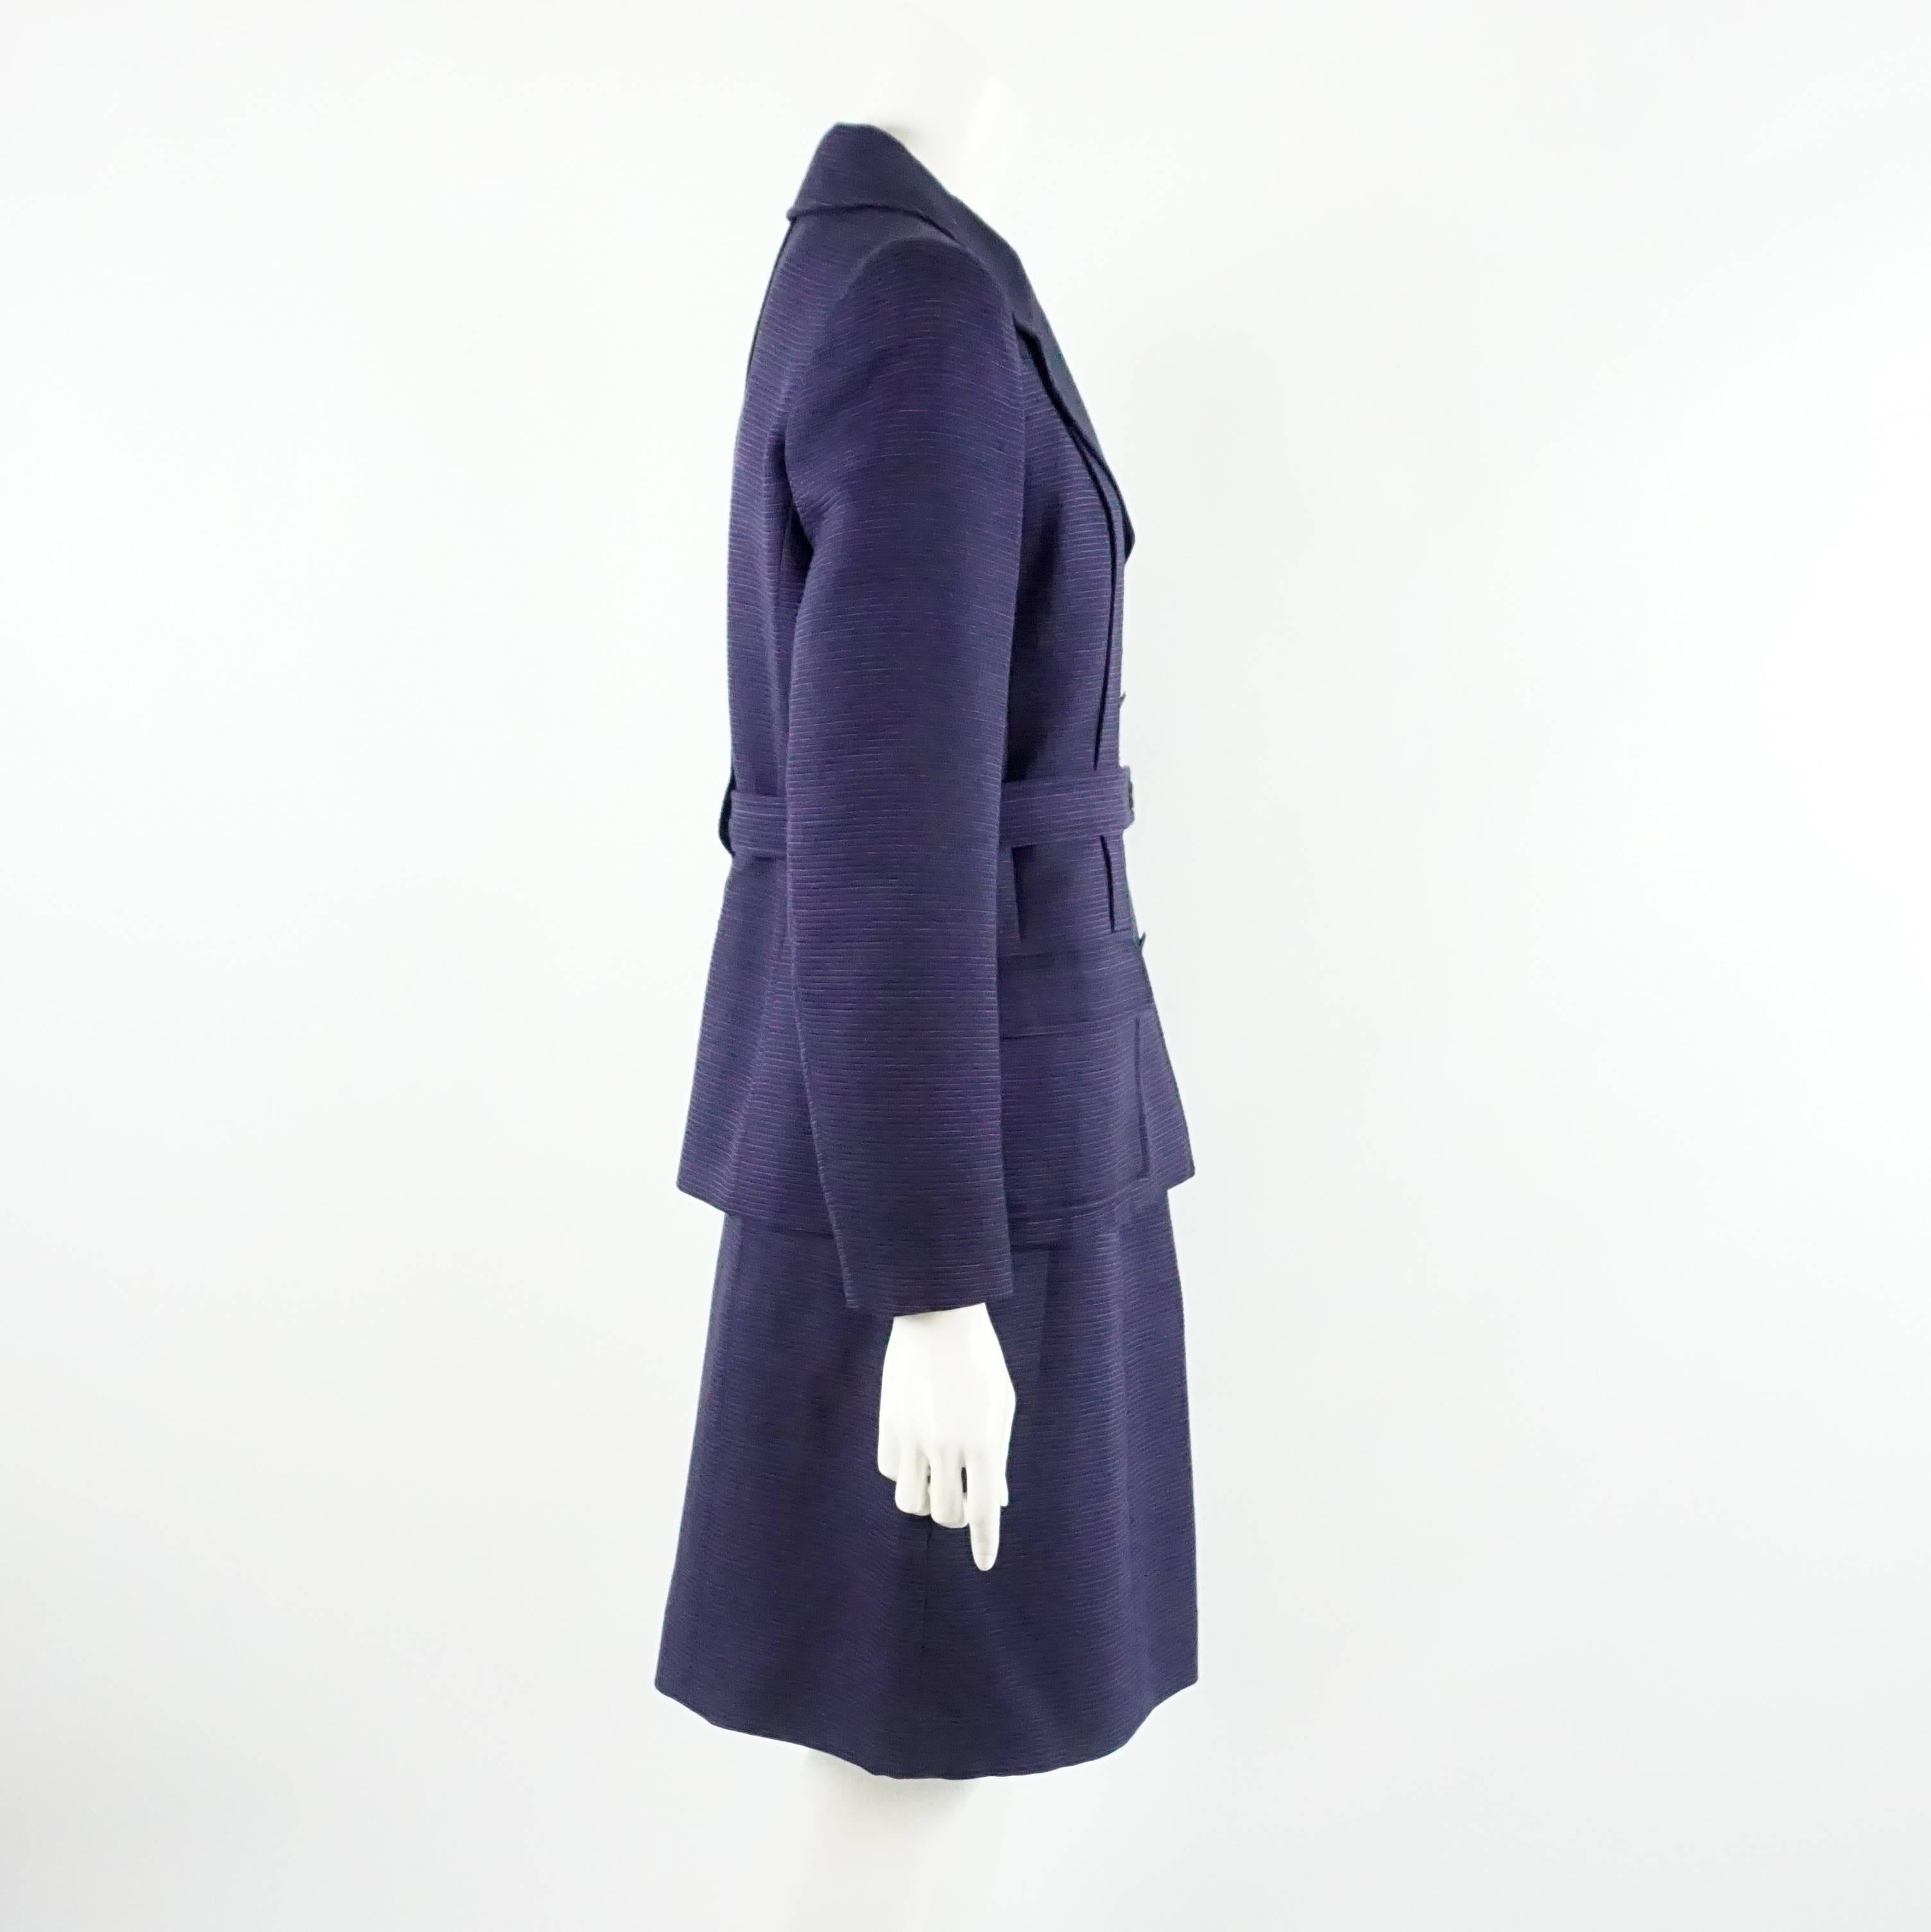 Chanel - tailleur jupe côtelée en laine/soie violet bicolore - Taille 40. Ce tailleur jupe vintage est confectionné dans un tissu de laine violet foncé, avec de fines rayures horizontales violet plus clair. La veste, entièrement doublée de soie, est